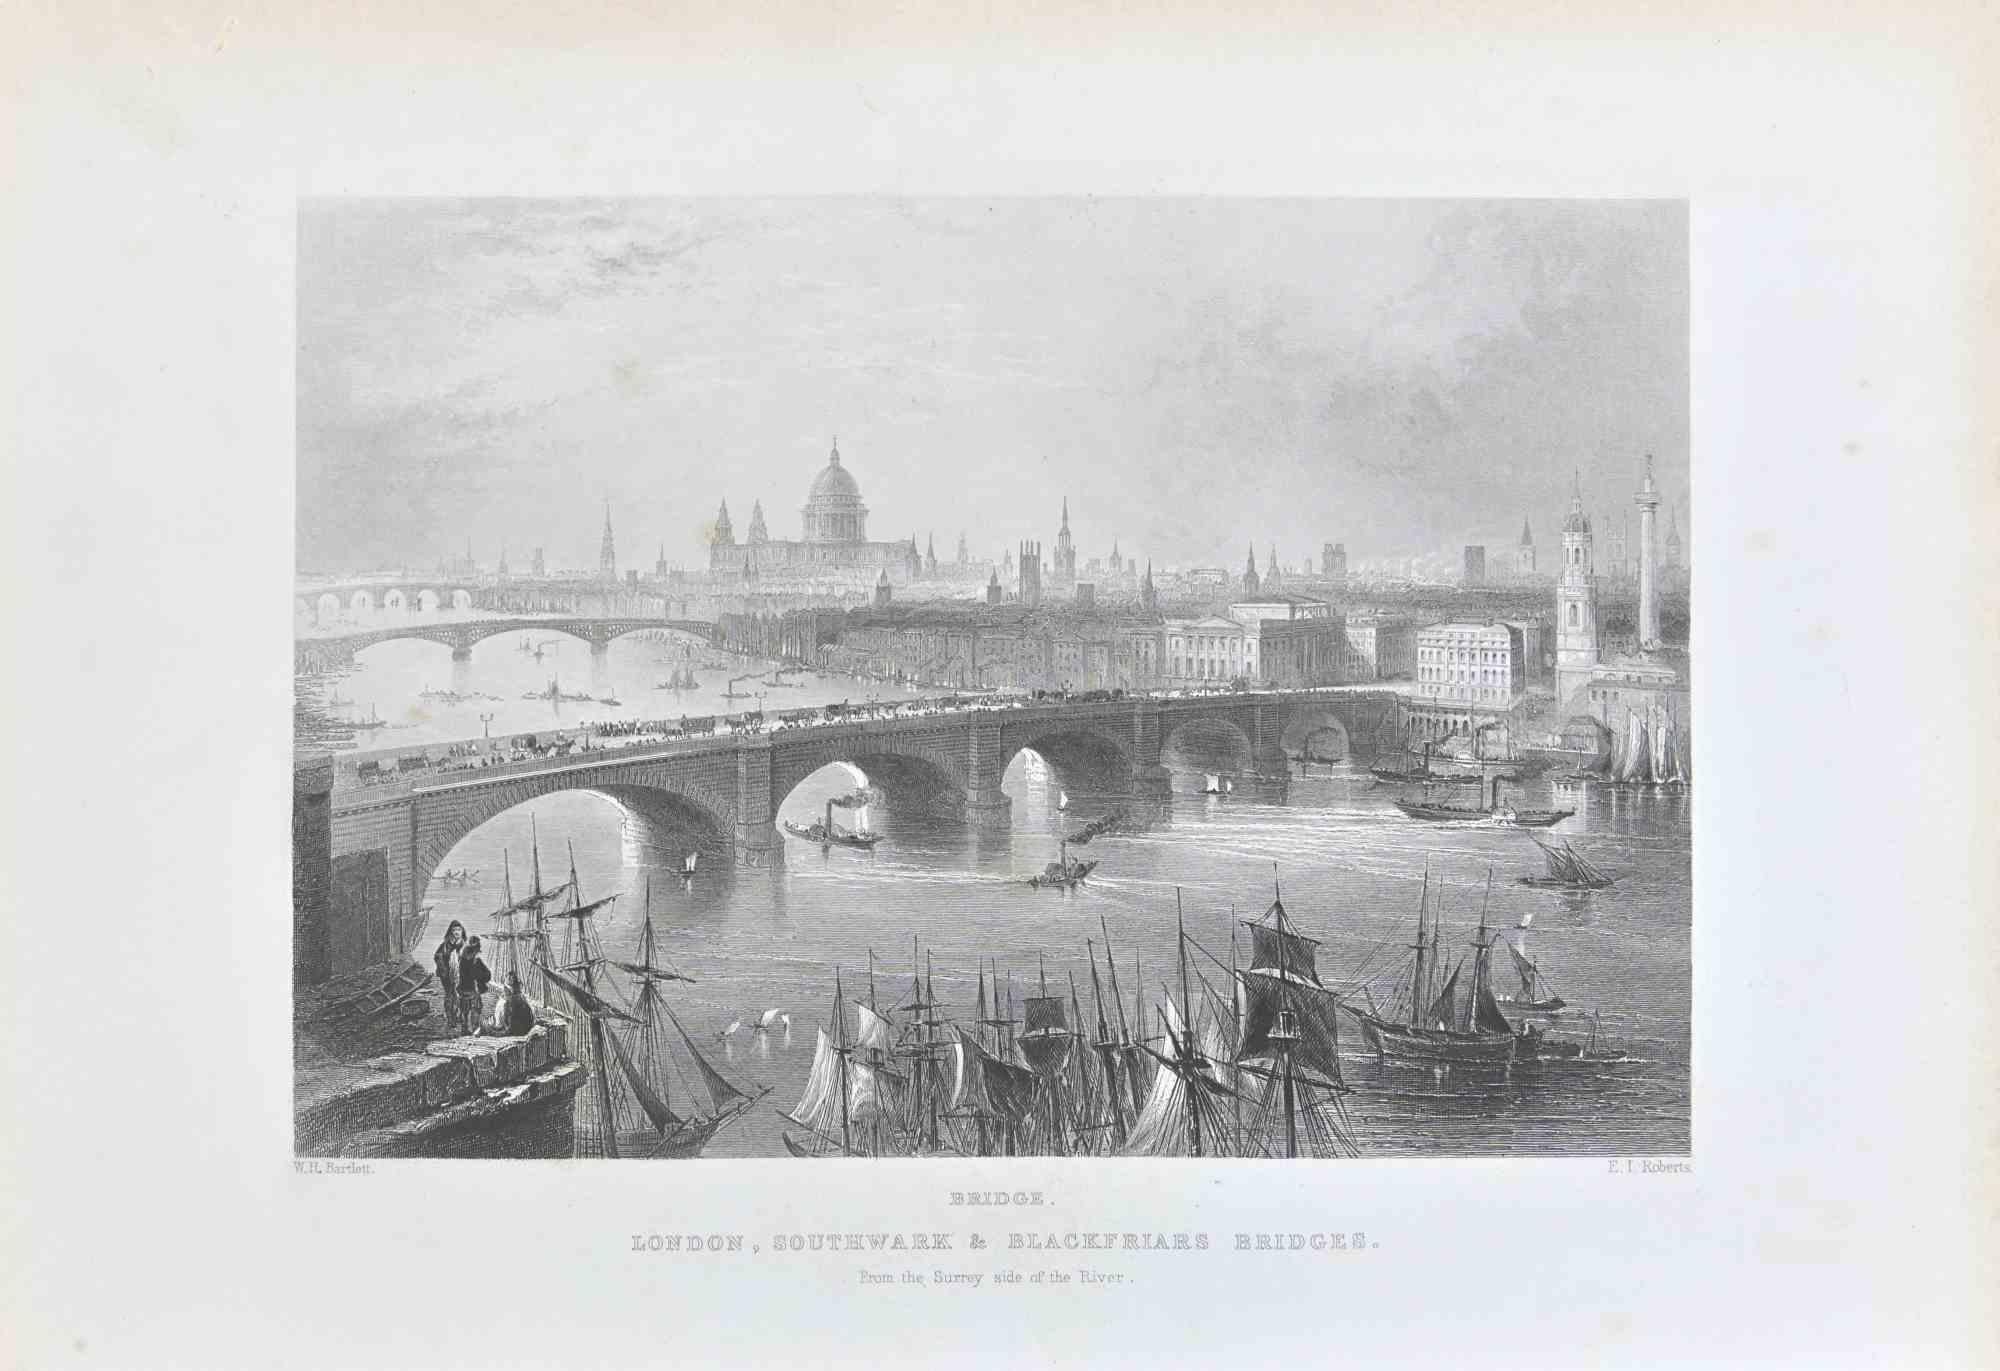 Londres est une gravure réalisée en 1845 par W. H. Bartlett.

Signé sur la plaque. 

Titré en bas au centre.

Bon état avec de légères rousseurs.

L'œuvre d'art est magnifiquement réalisée dans une composition bien équilibrée par des traits courts